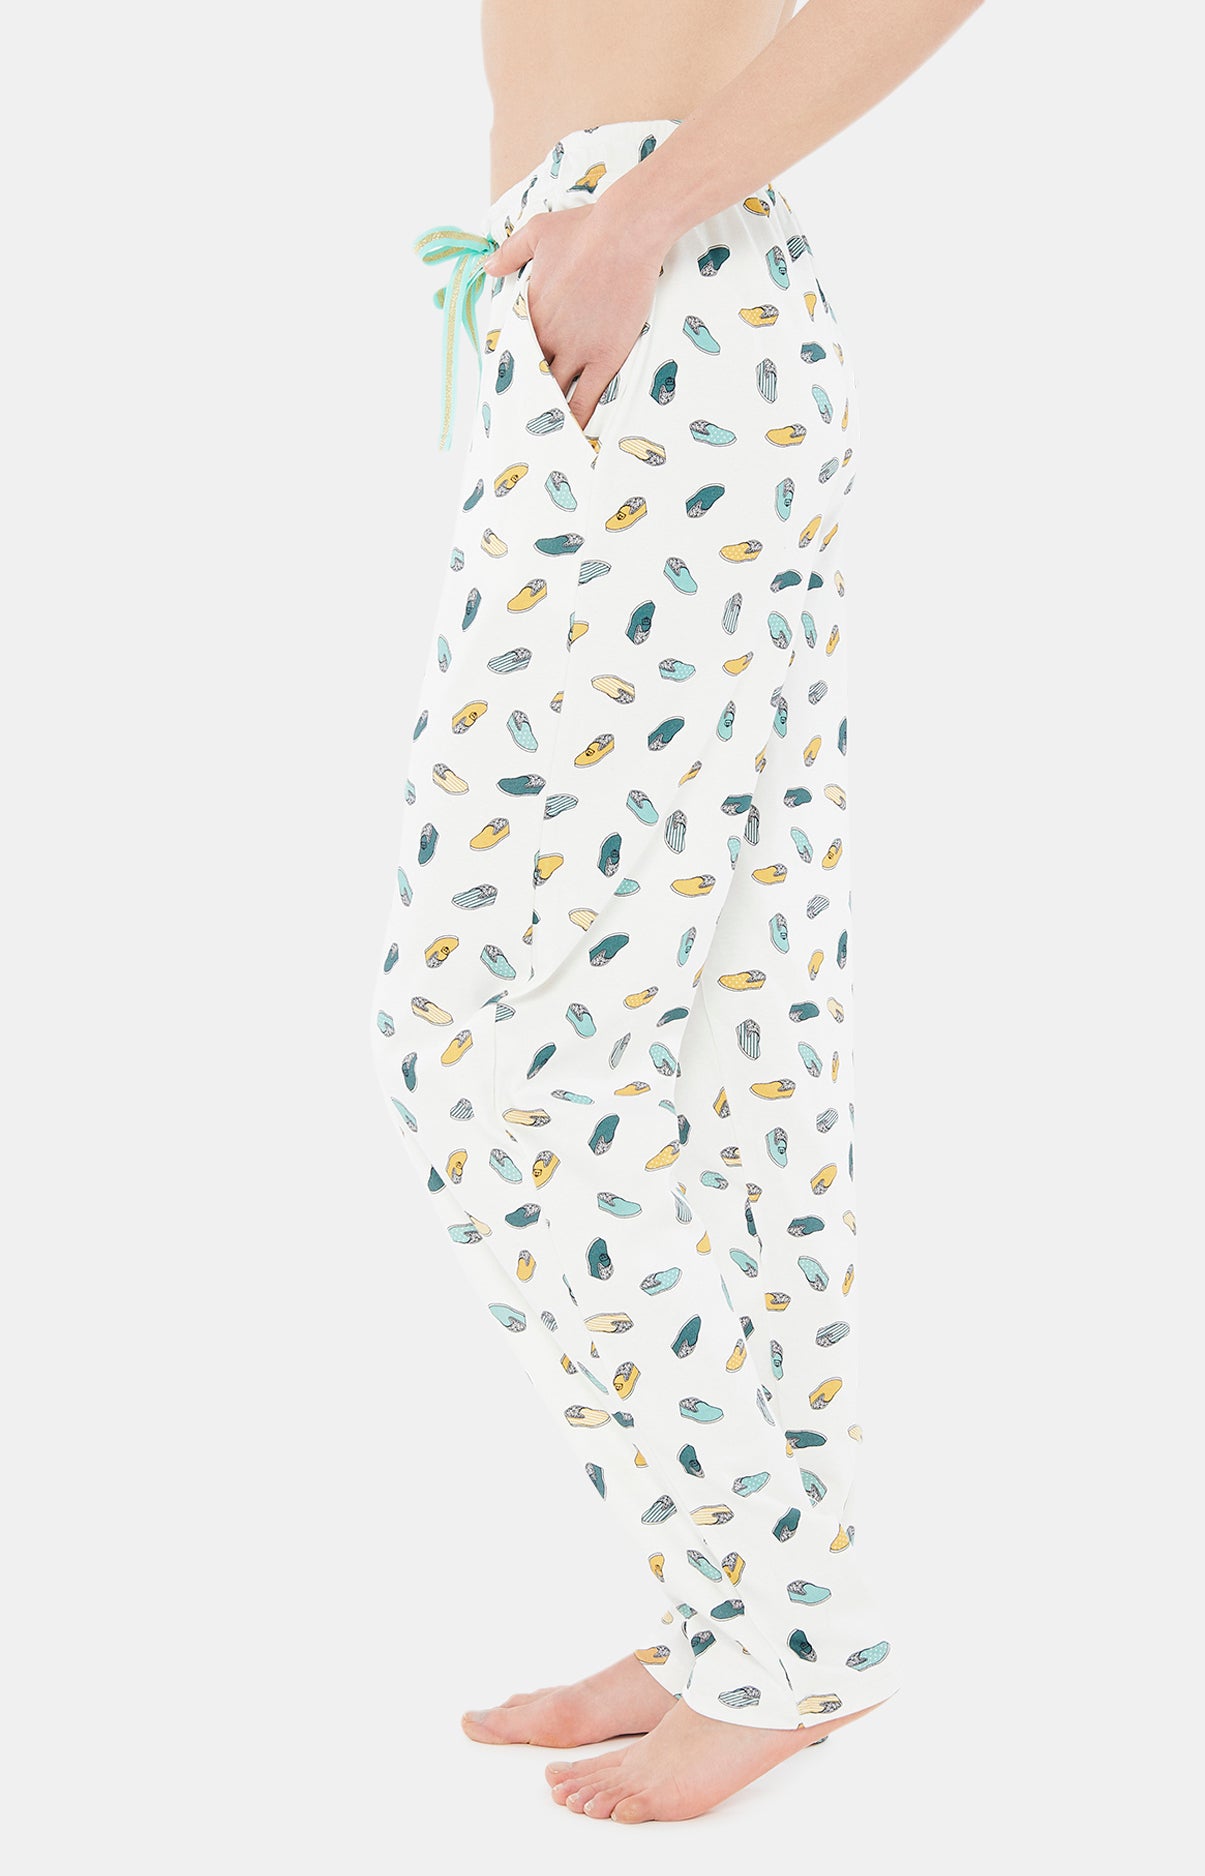 Pyjama Pantouflard - Ciel